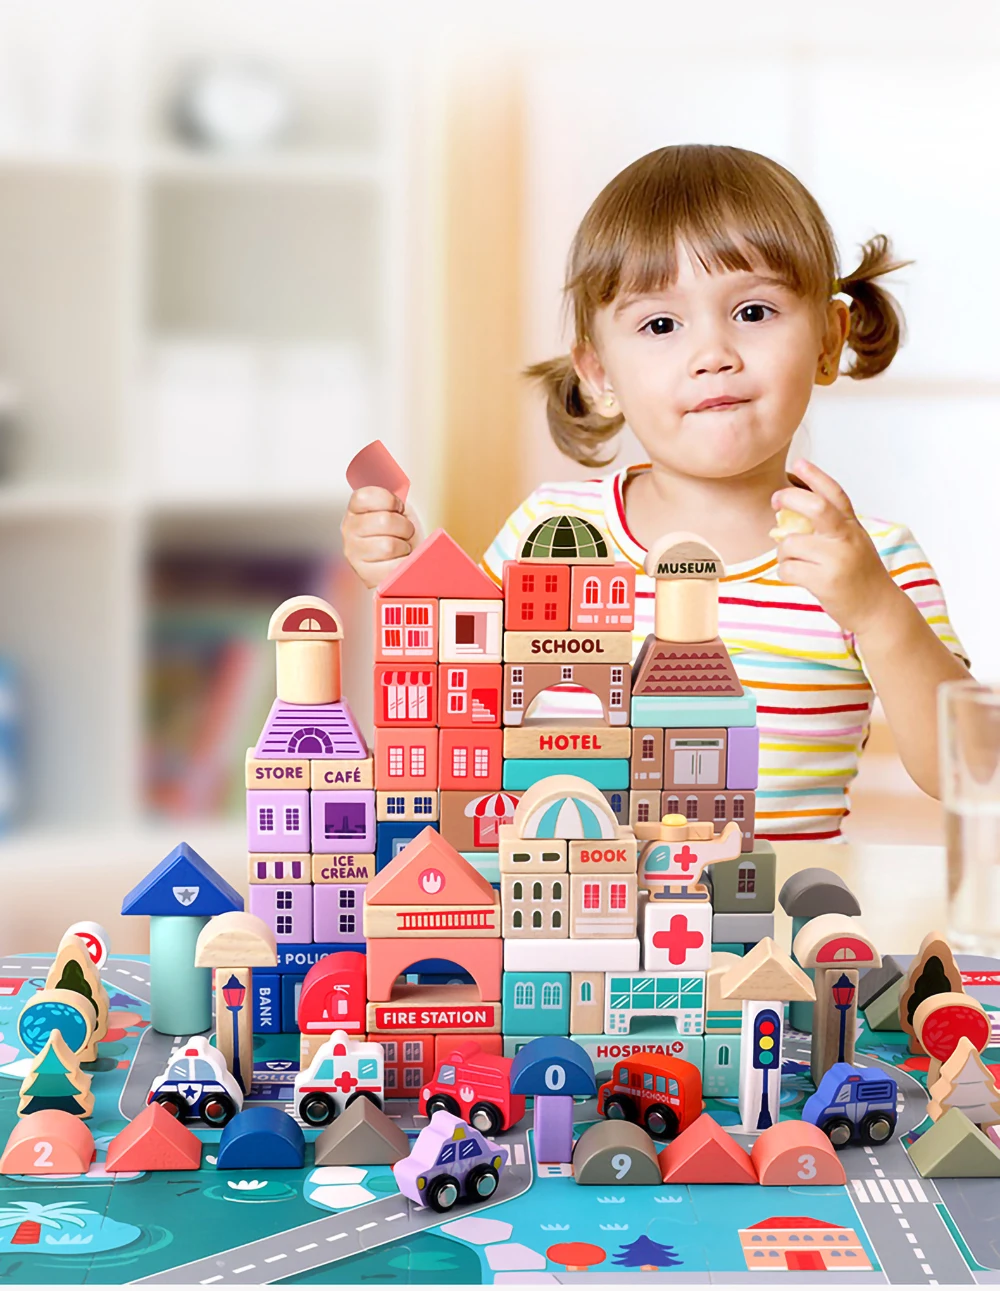 Высокое качество, 115 шт., деревянные строительные блоки Macaron City, большие частицы, детские развивающие игрушки, детская игрушка для боя, блок, подарки